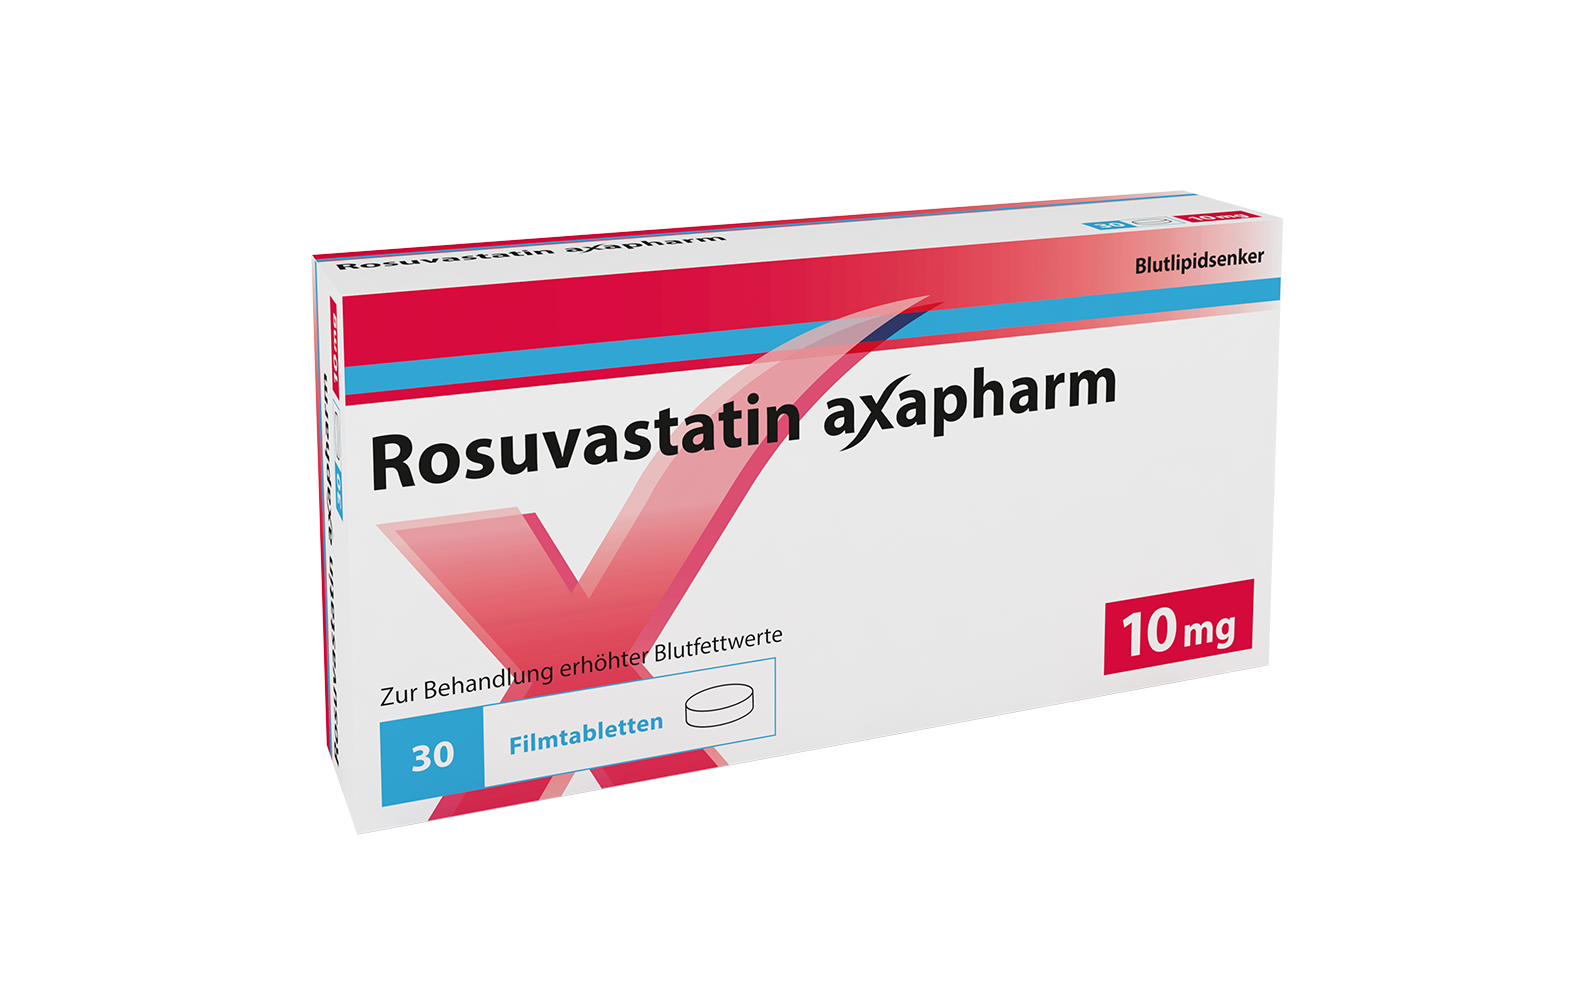 Rosuvastatin axapharm 10 mg axpharm ag